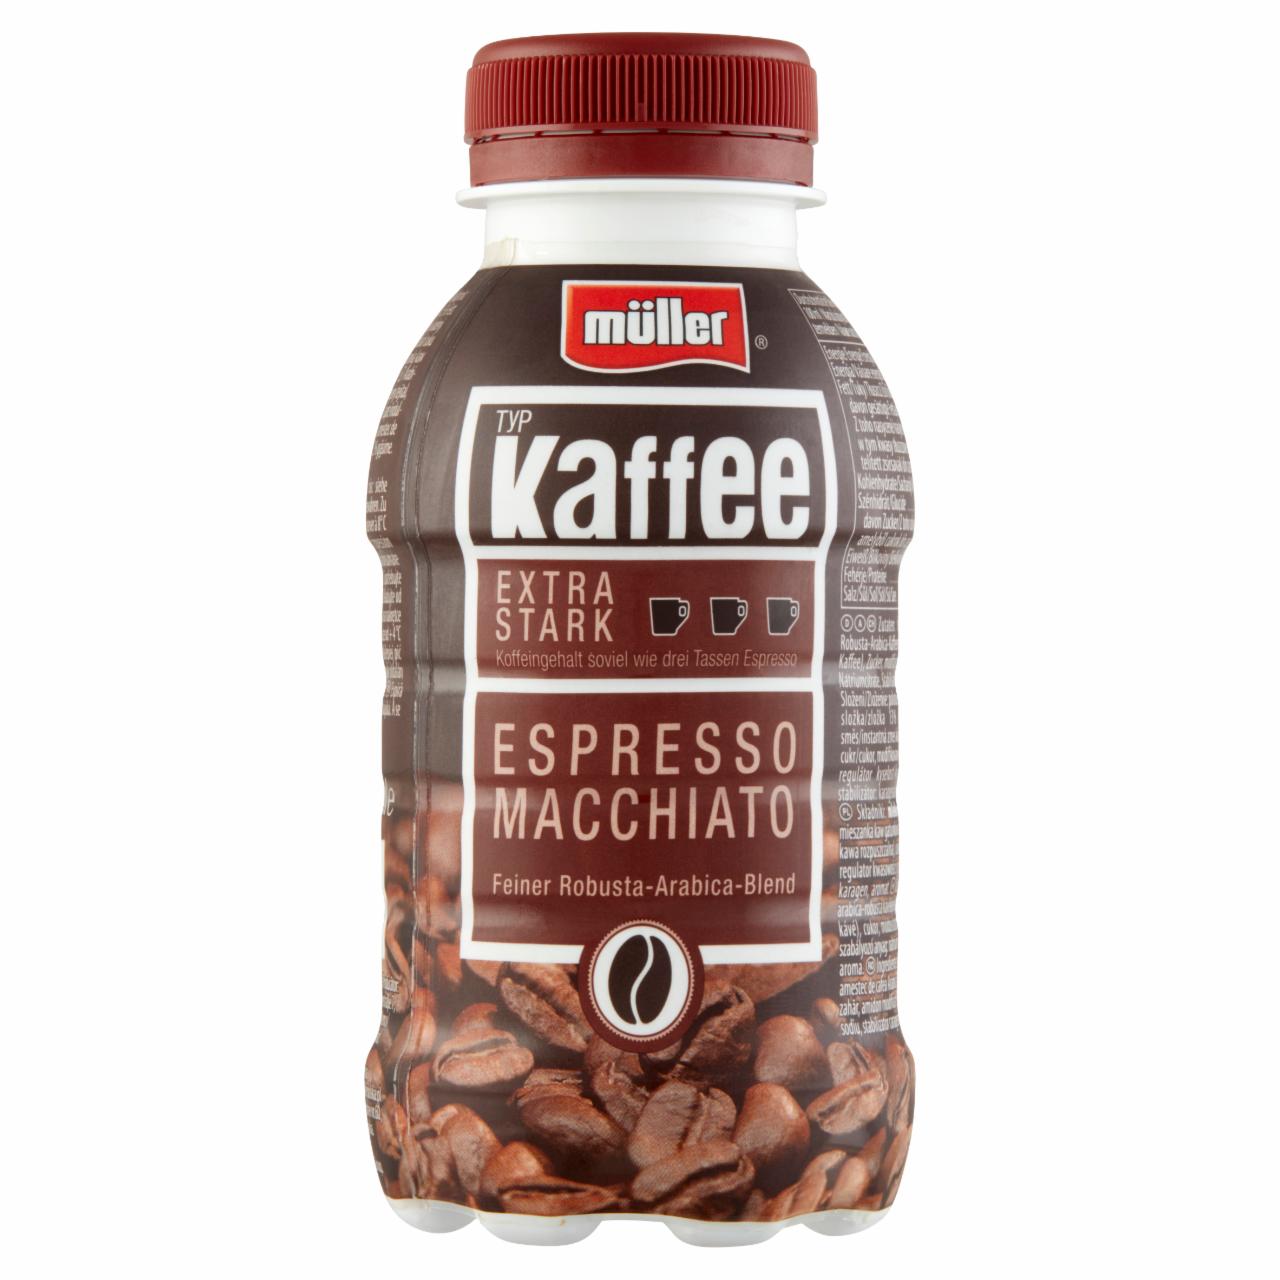 Képek - Müller Kaffee Espresso Macchiato Arabica-Robusta kávéval ízesített zsírszegény tejital 250 ml